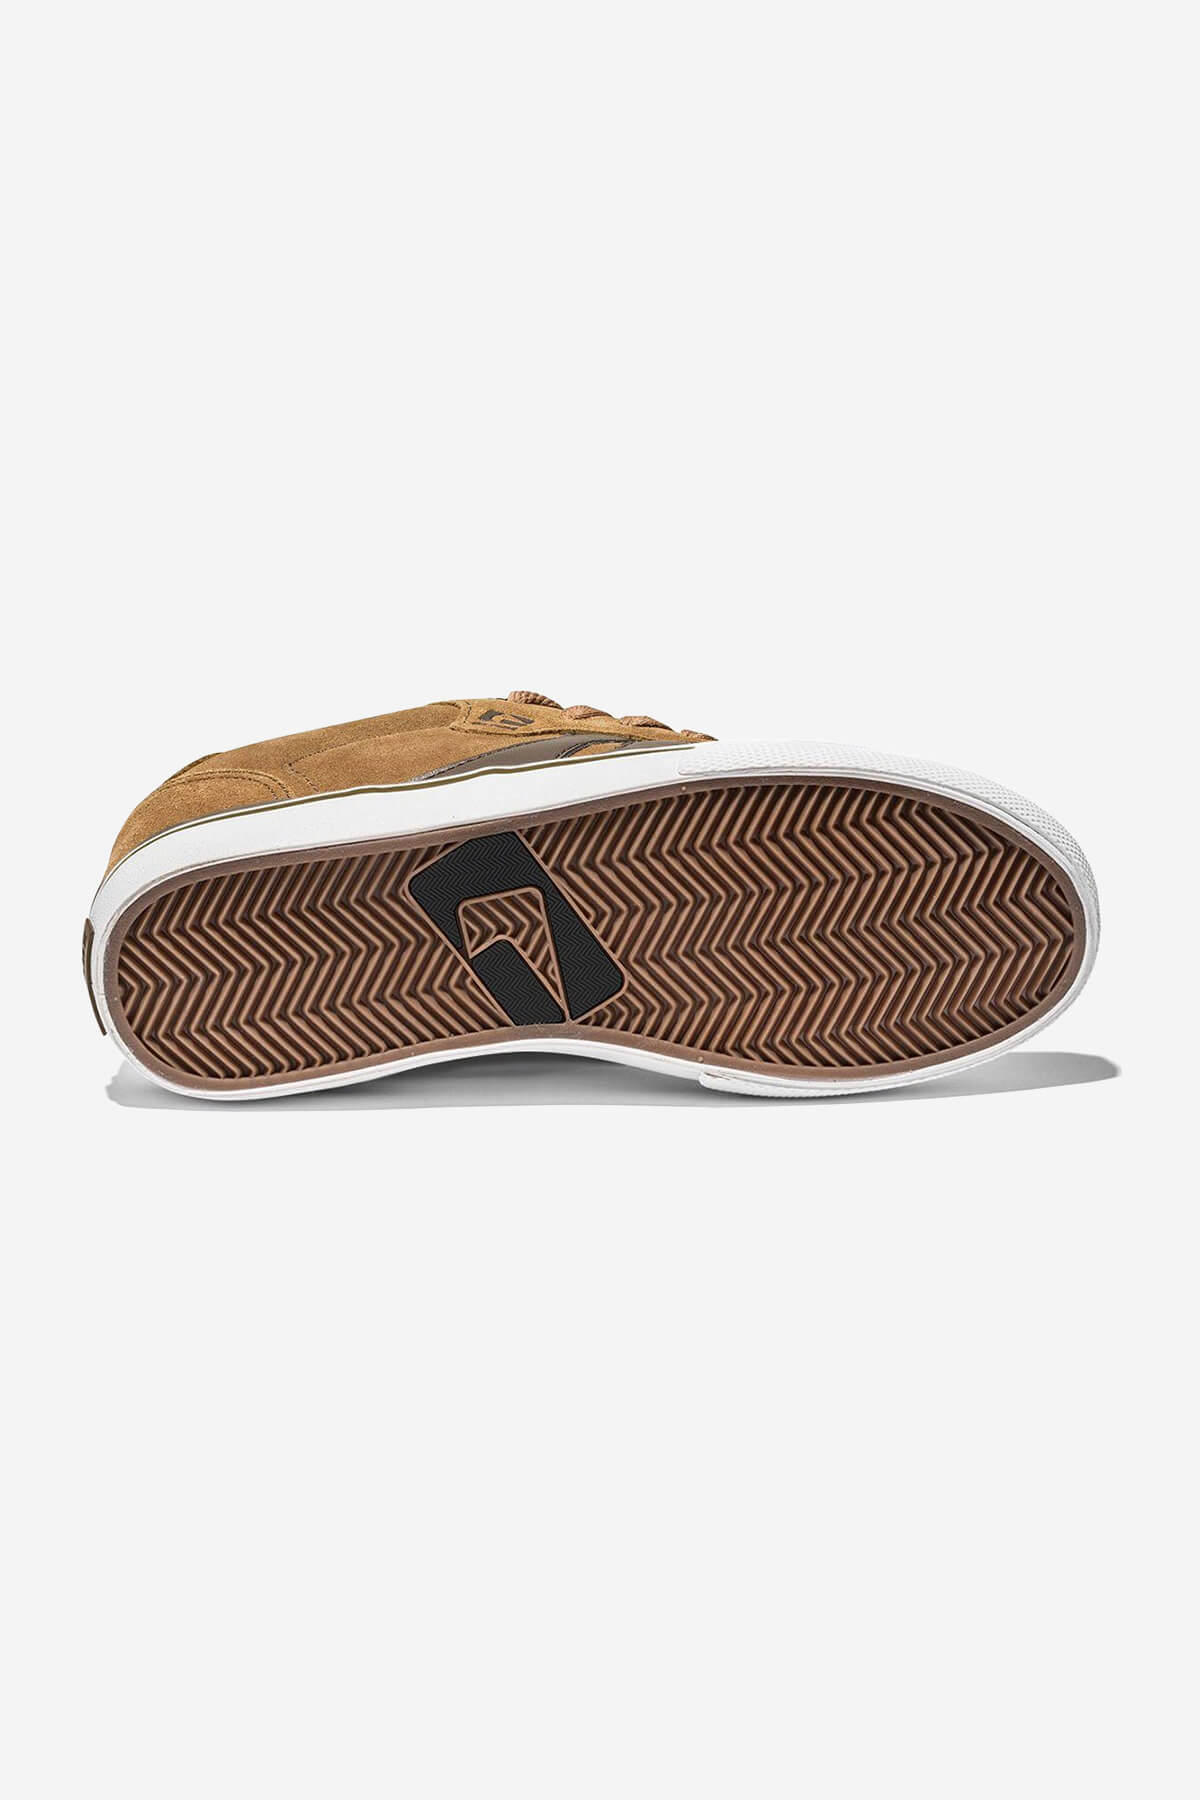 encore-2 zapatos marrones skateboard